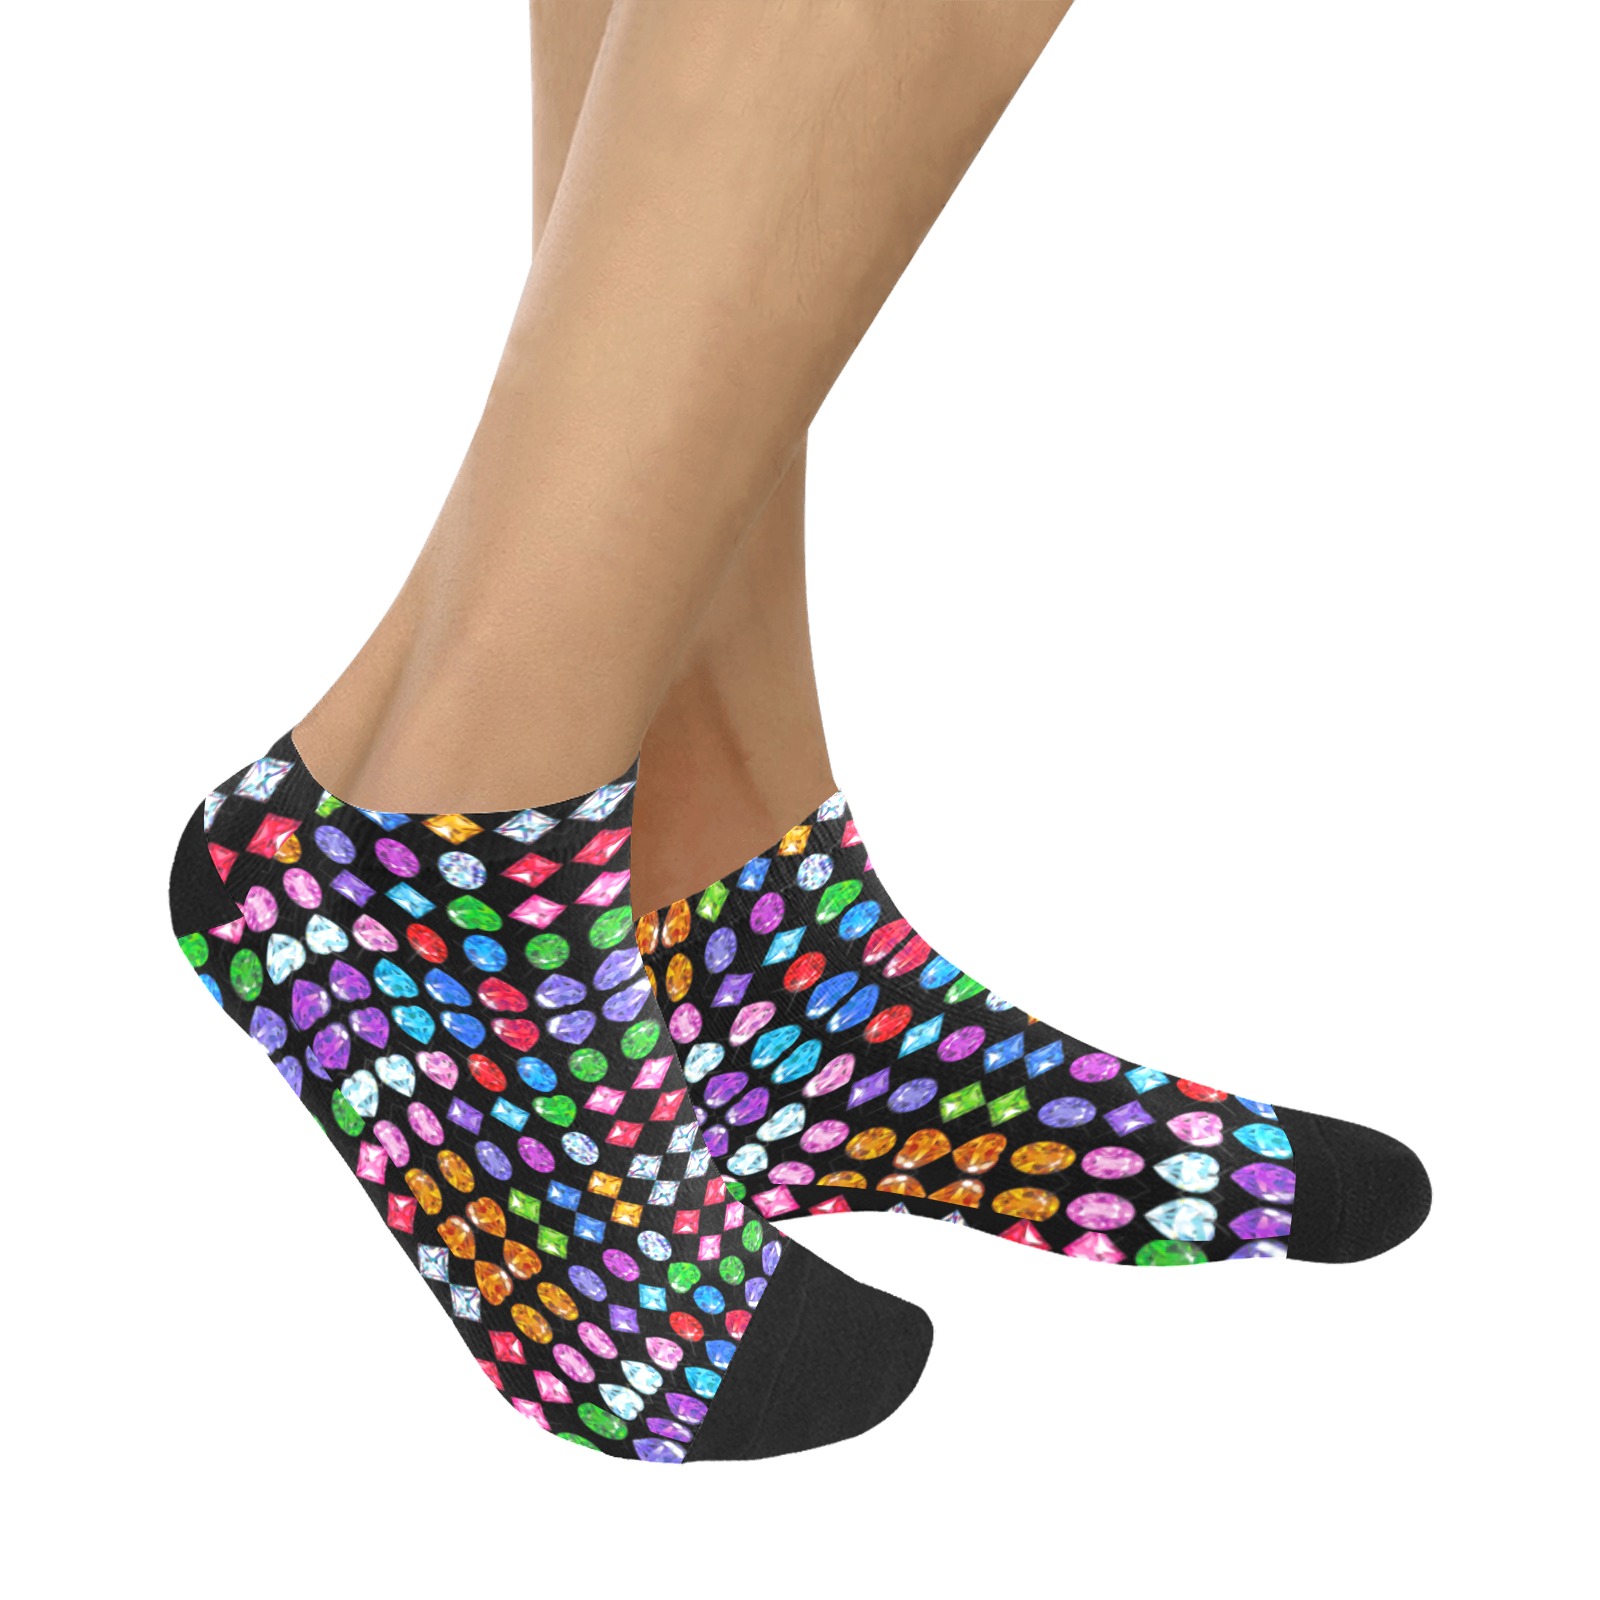 BLING 7 Women's Ankle Socks